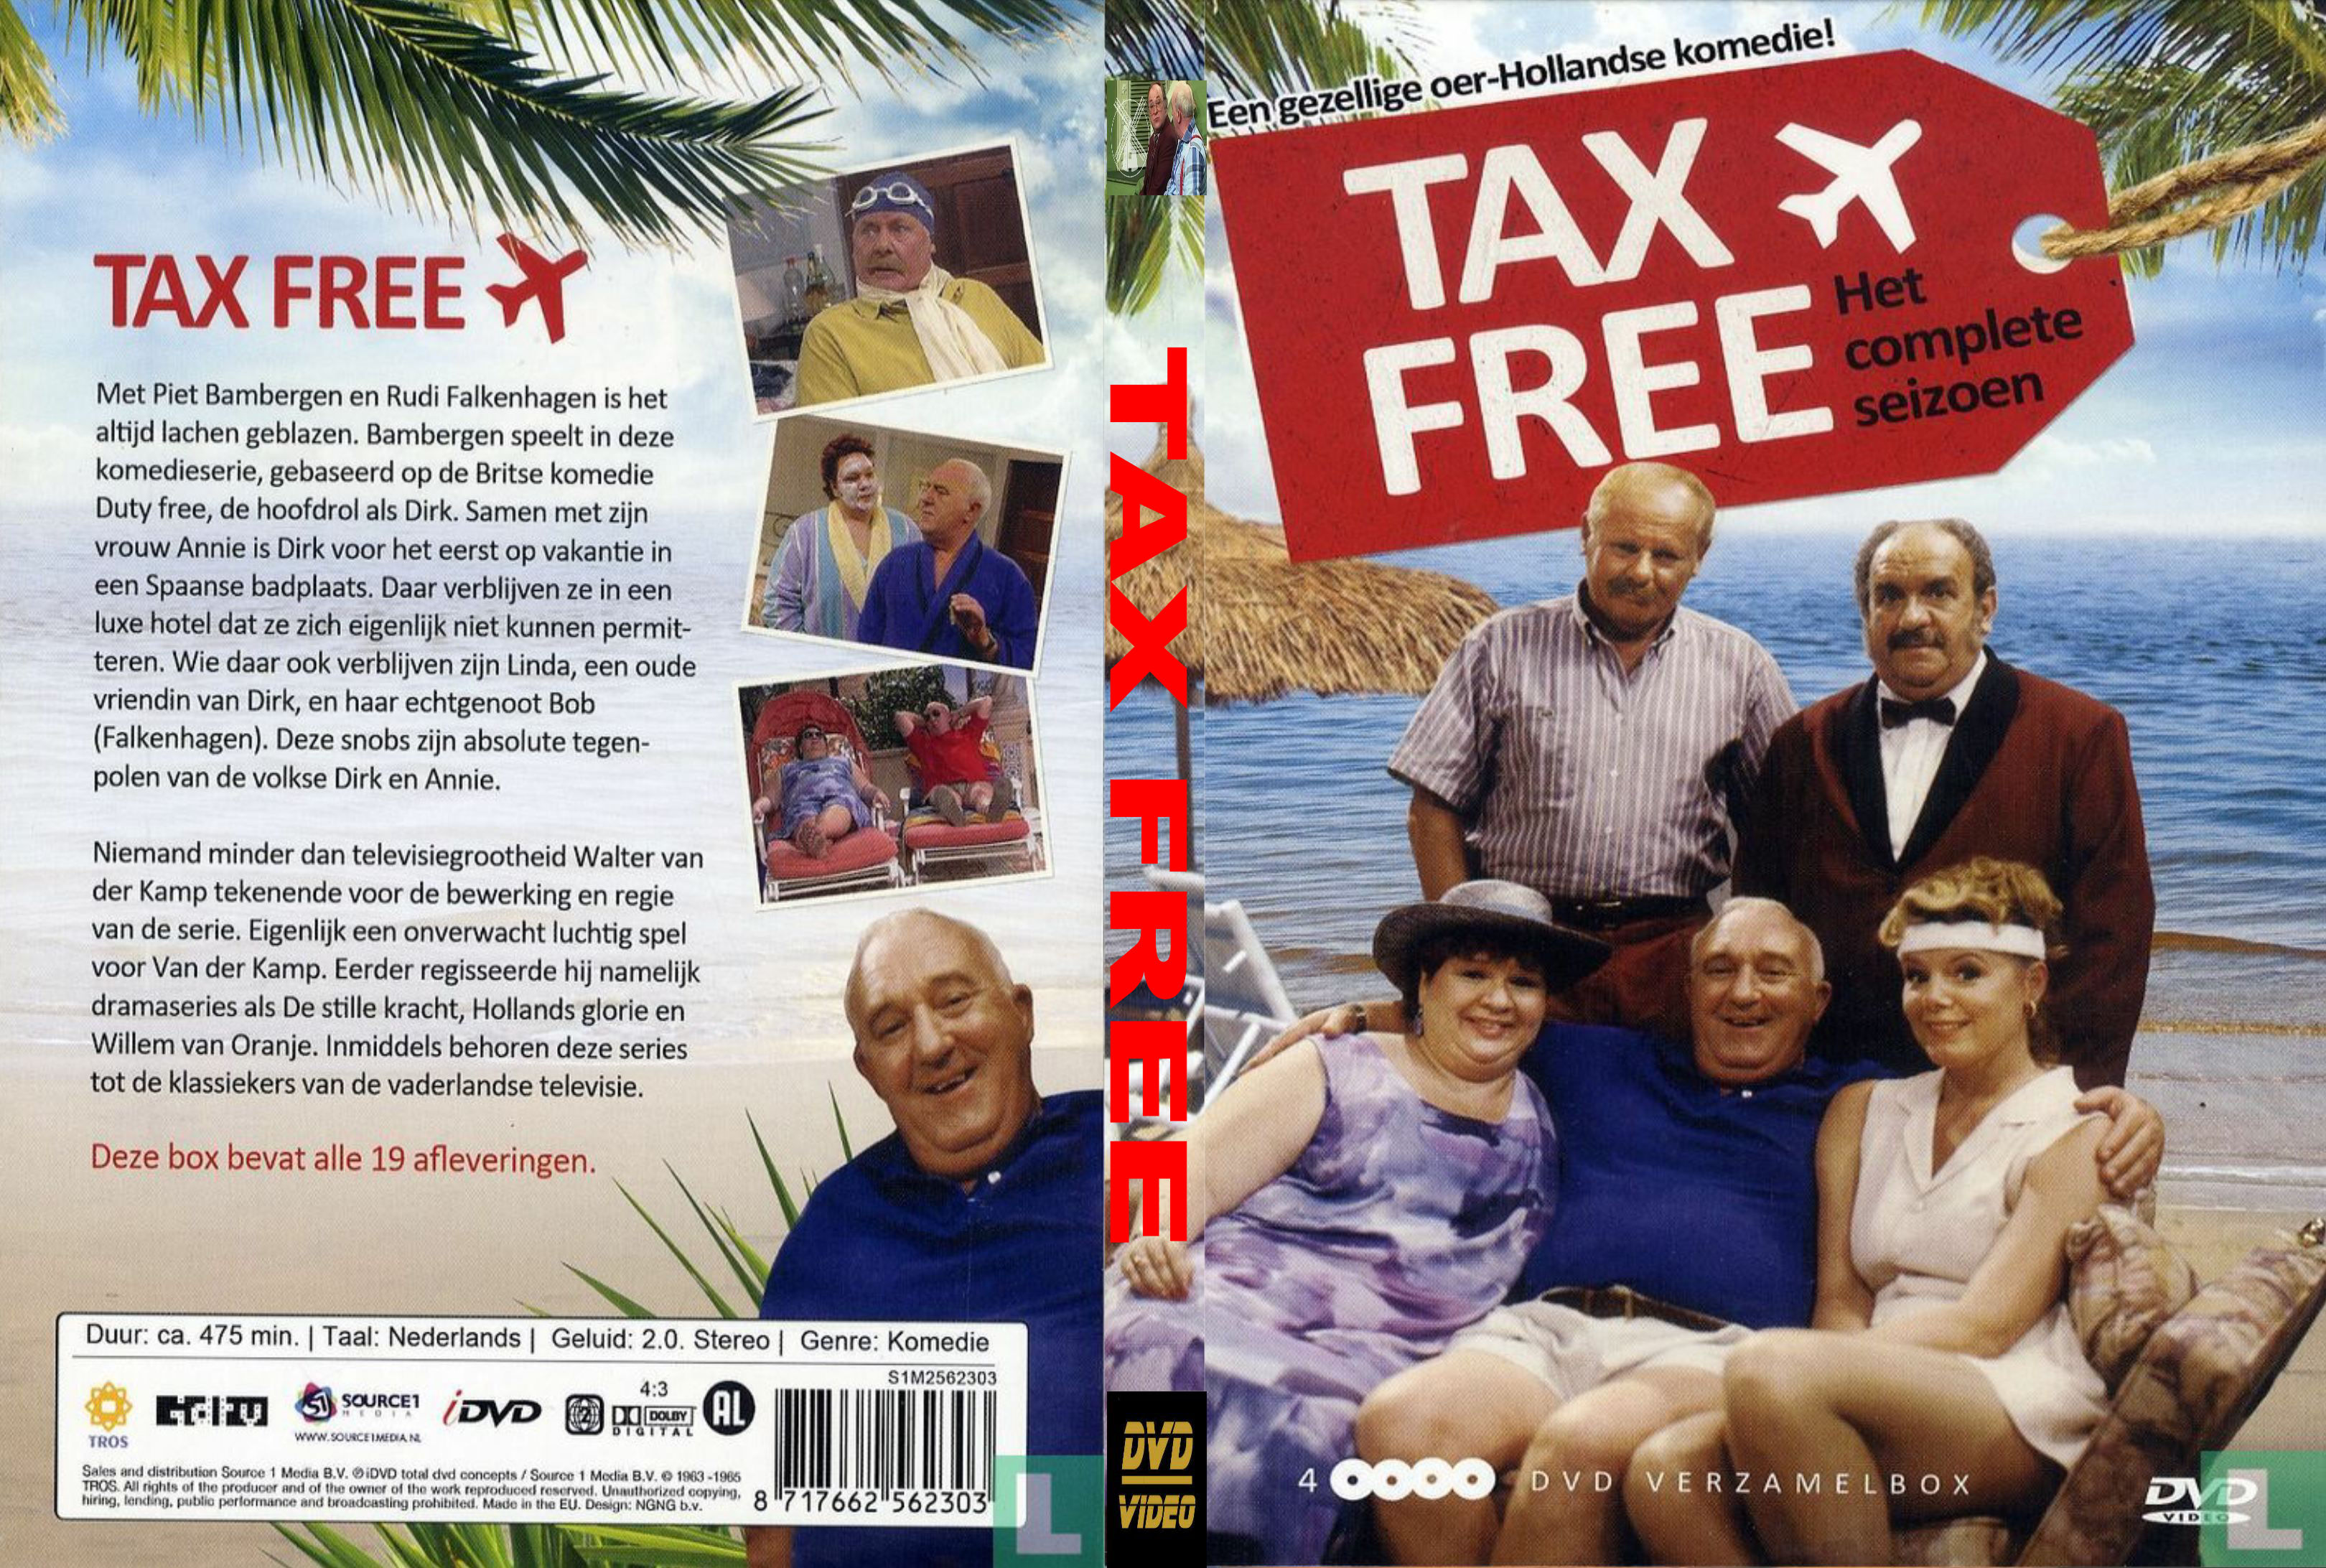 Tax Free - DvD 2 van 4